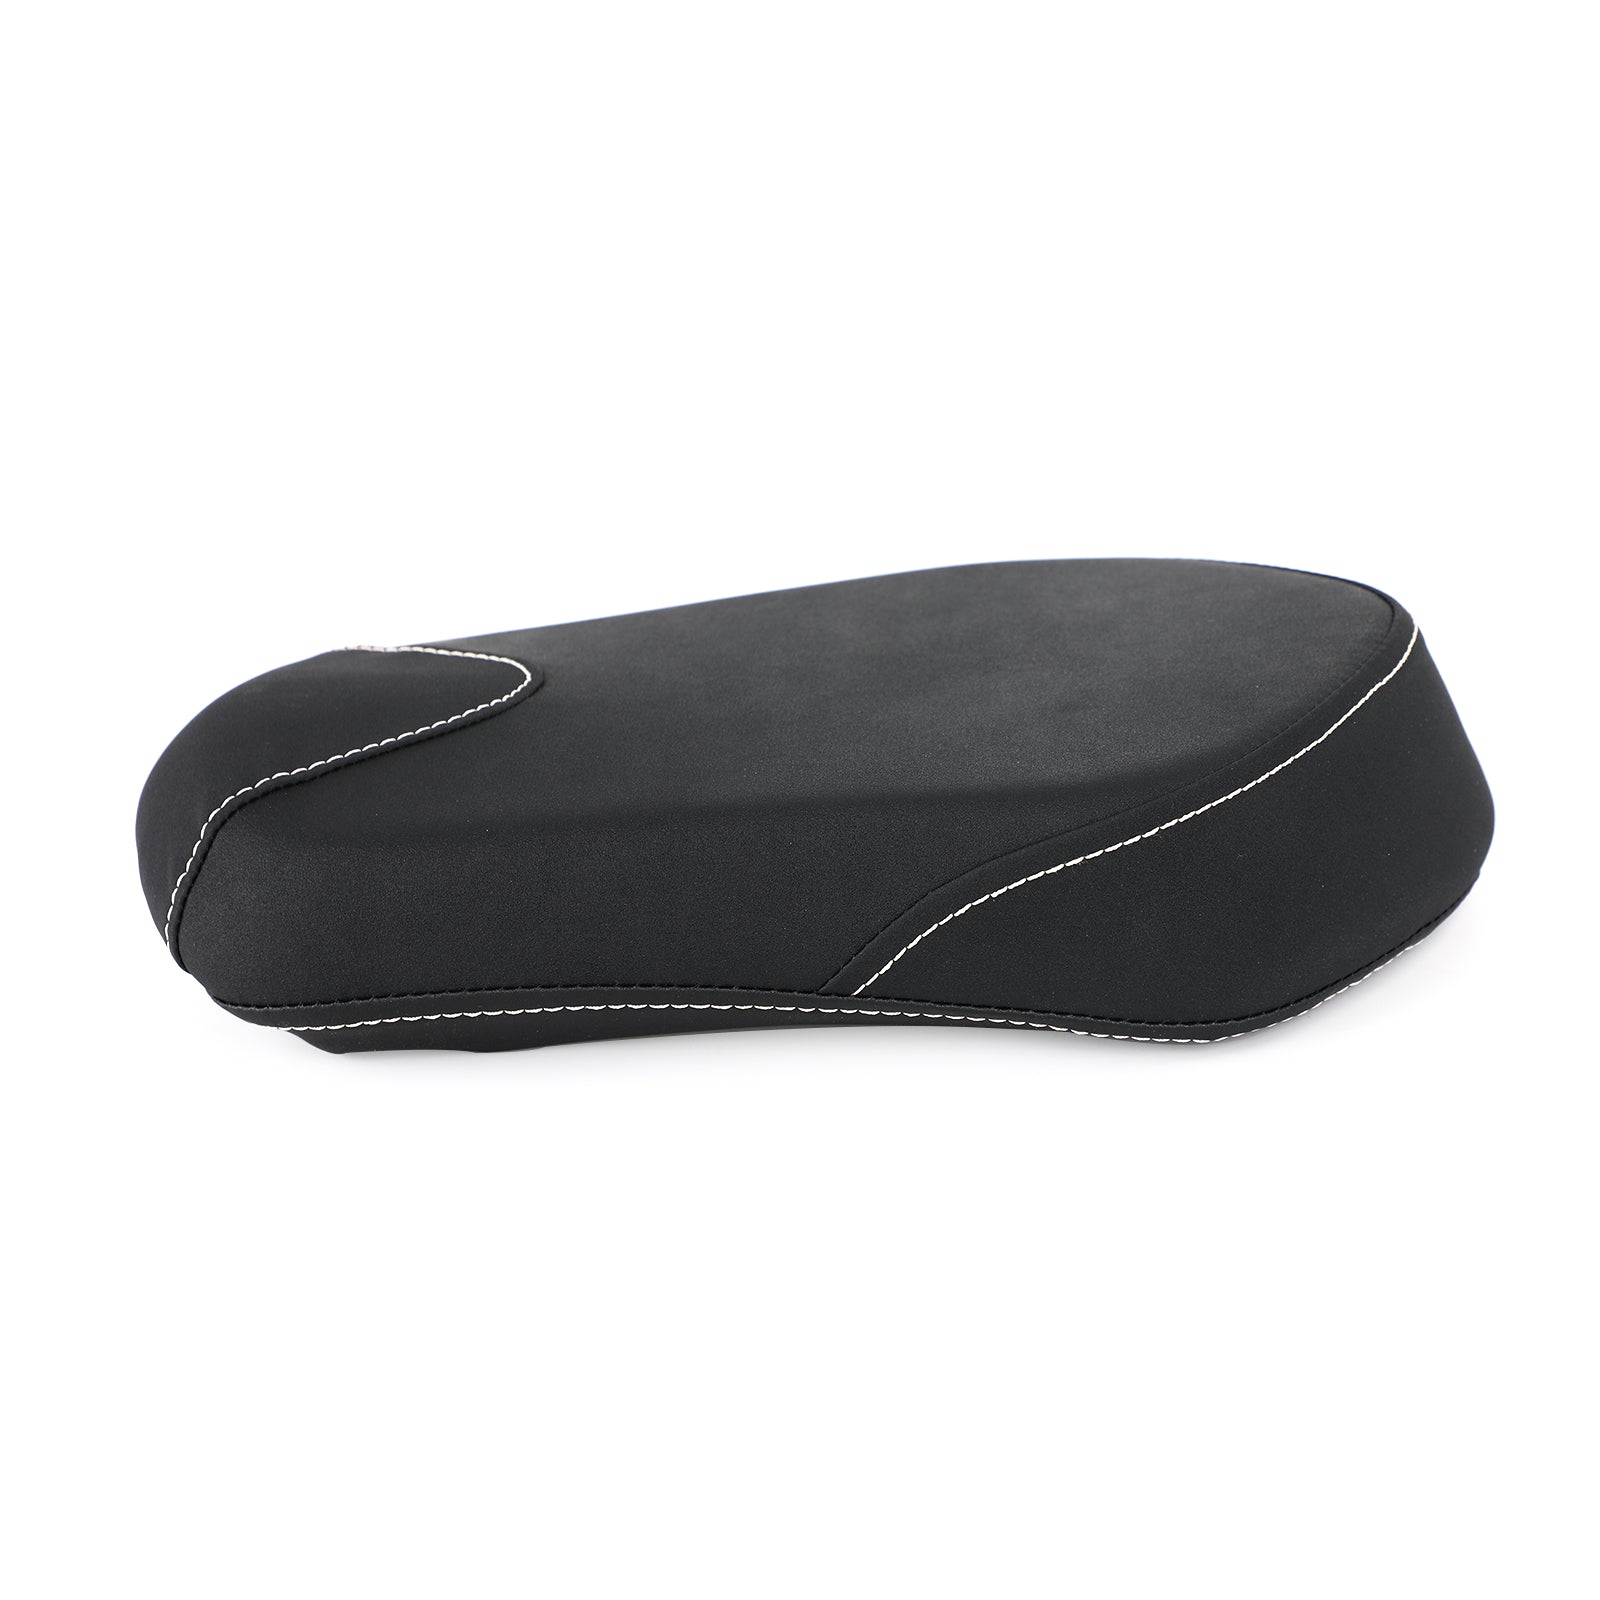 Cuscino nero per sedile passeggero posteriore adatto per Yamaha Bolt XV950 XVS950 2014-2020 generico